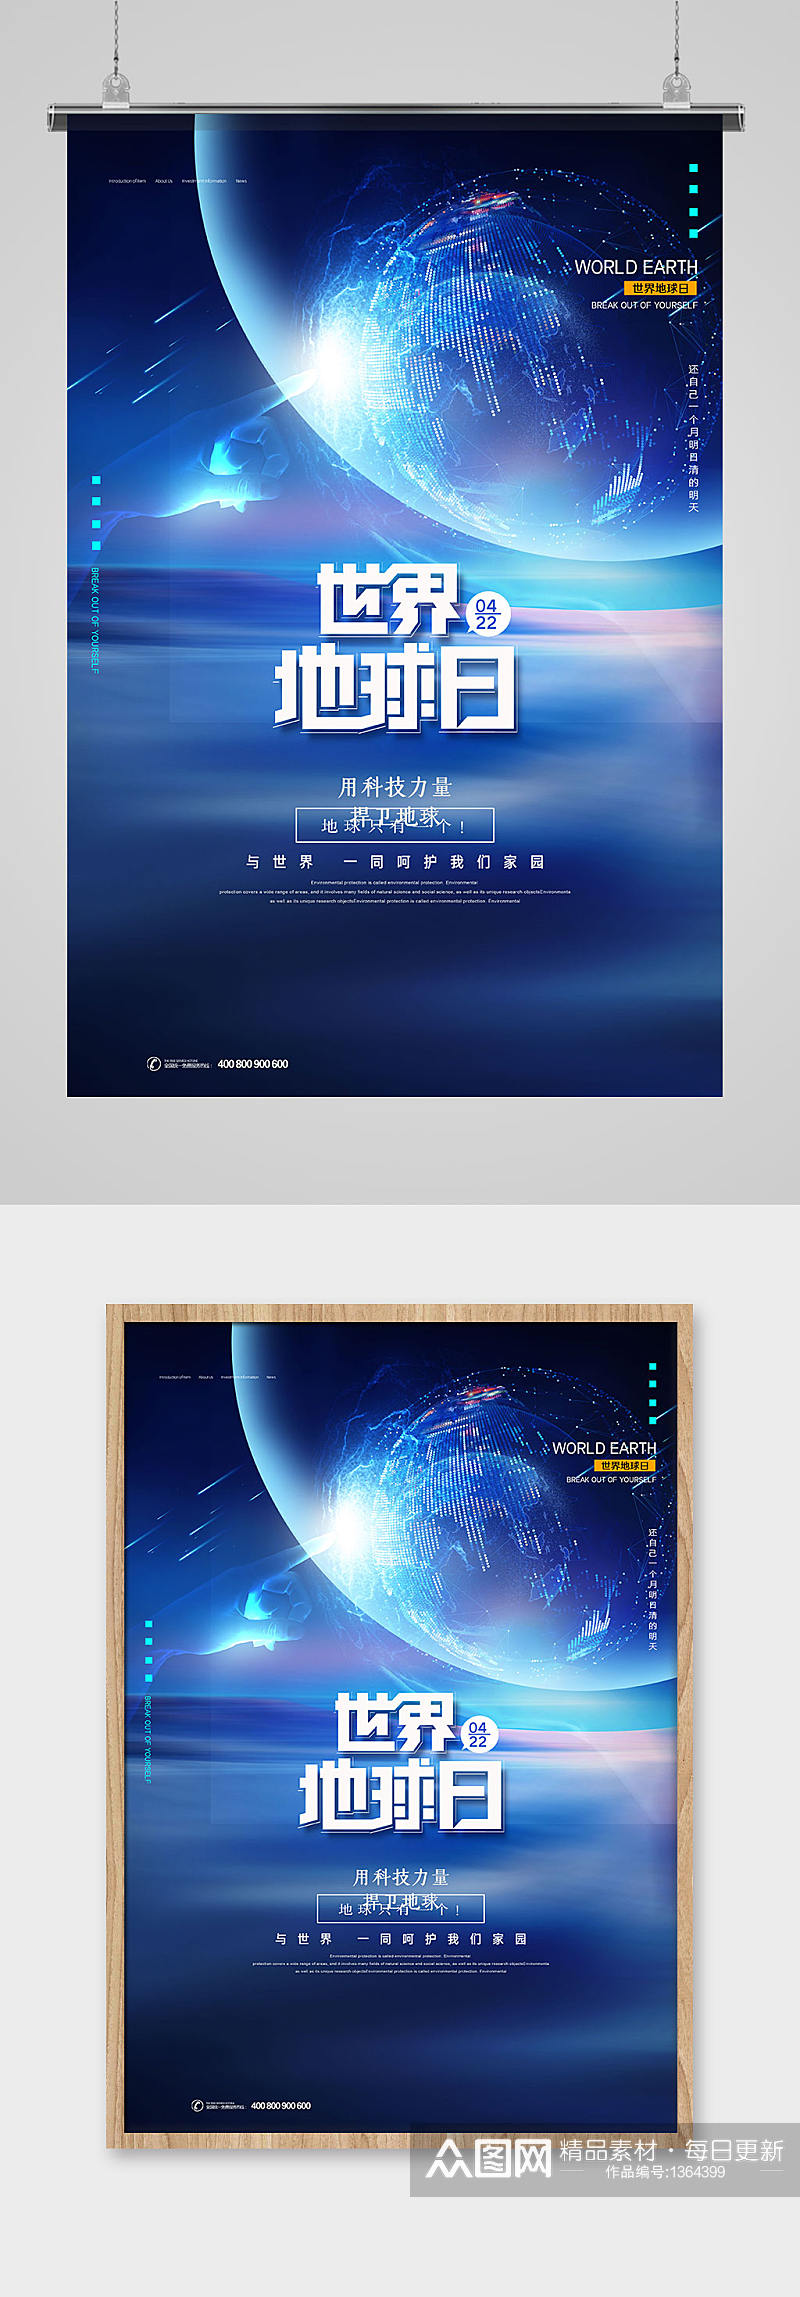 蓝色科技感世界地球日宣传海报素材